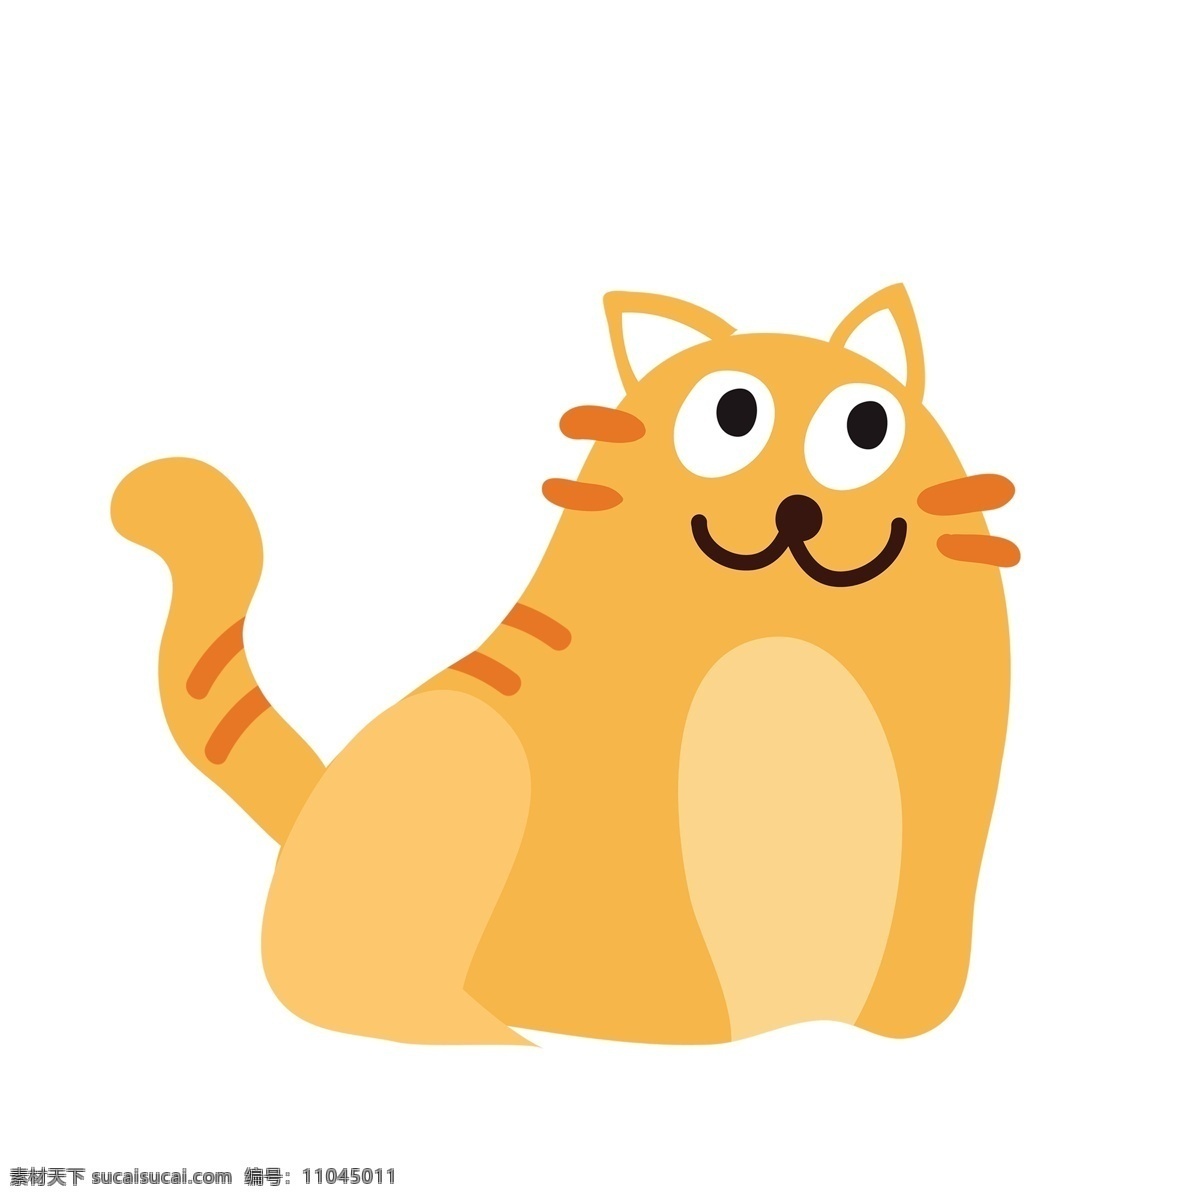 卡通 简约 小 肥 猫 可爱 动物 插画 萌宠 宠物 肥猫 橘猫 猫咪